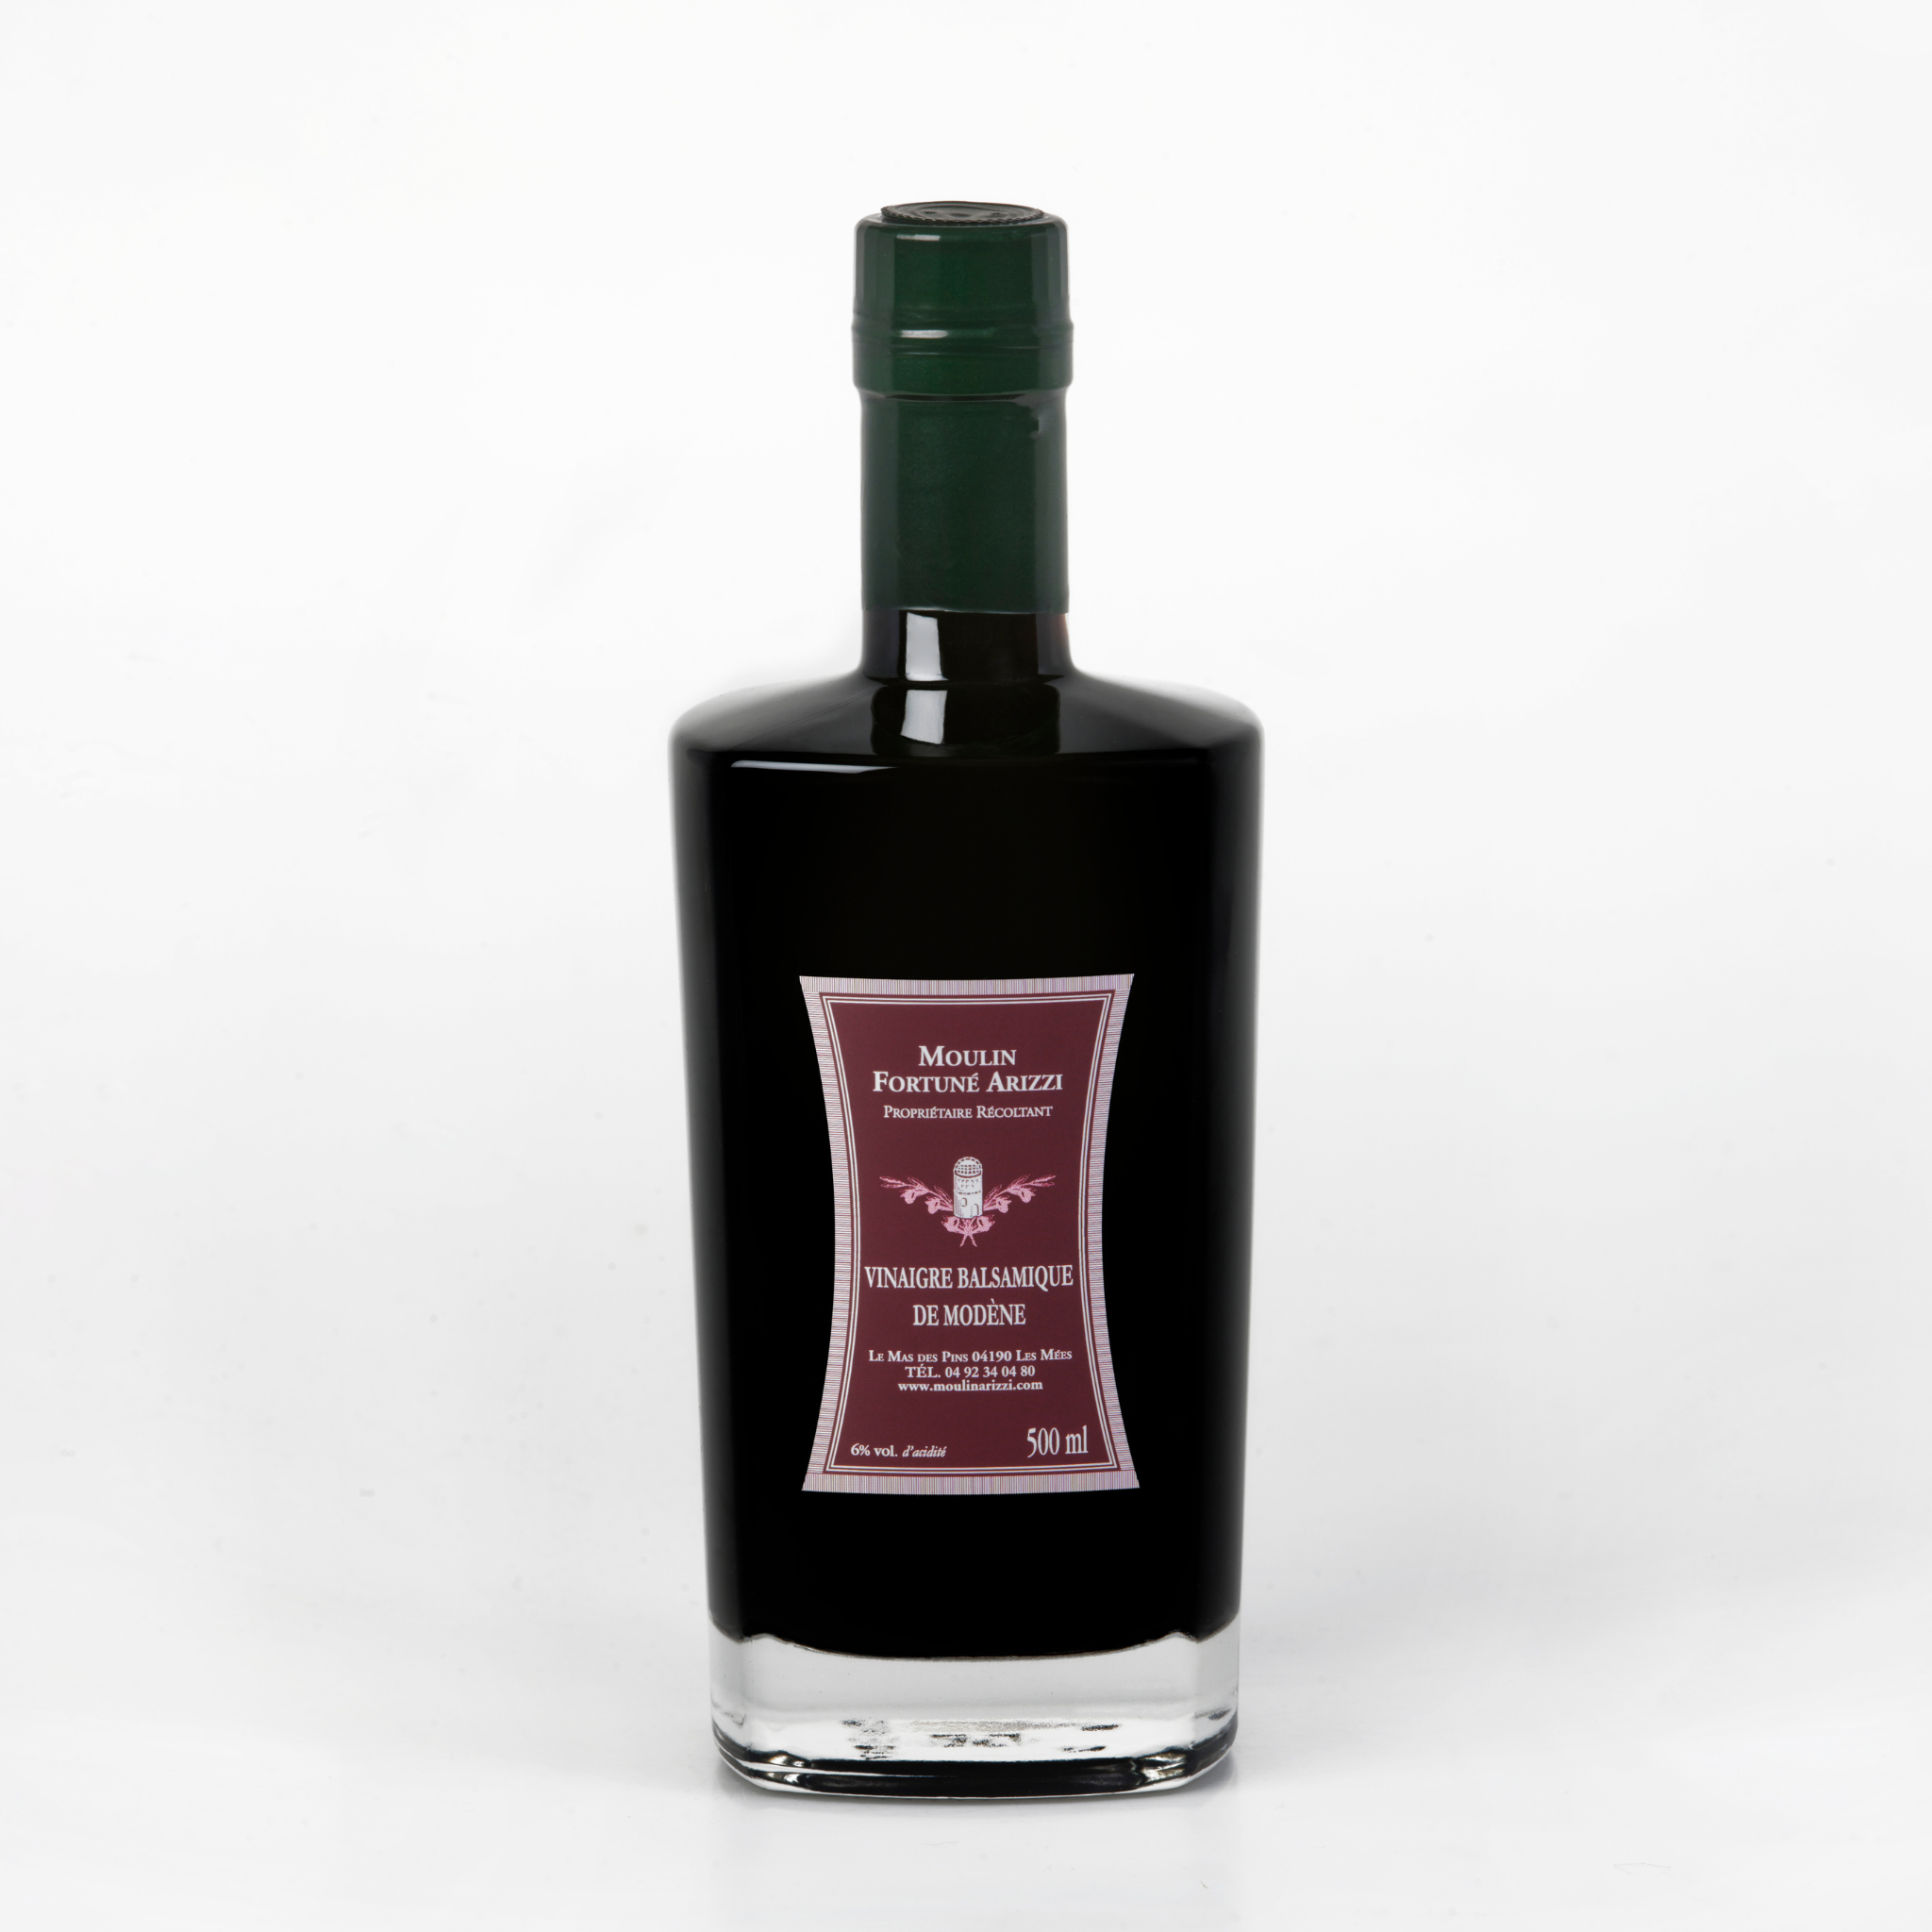 Huile d'Olive Arôme de Truffe Noire bouteille de 250 ml – Moulin Fortuné  Arizzi